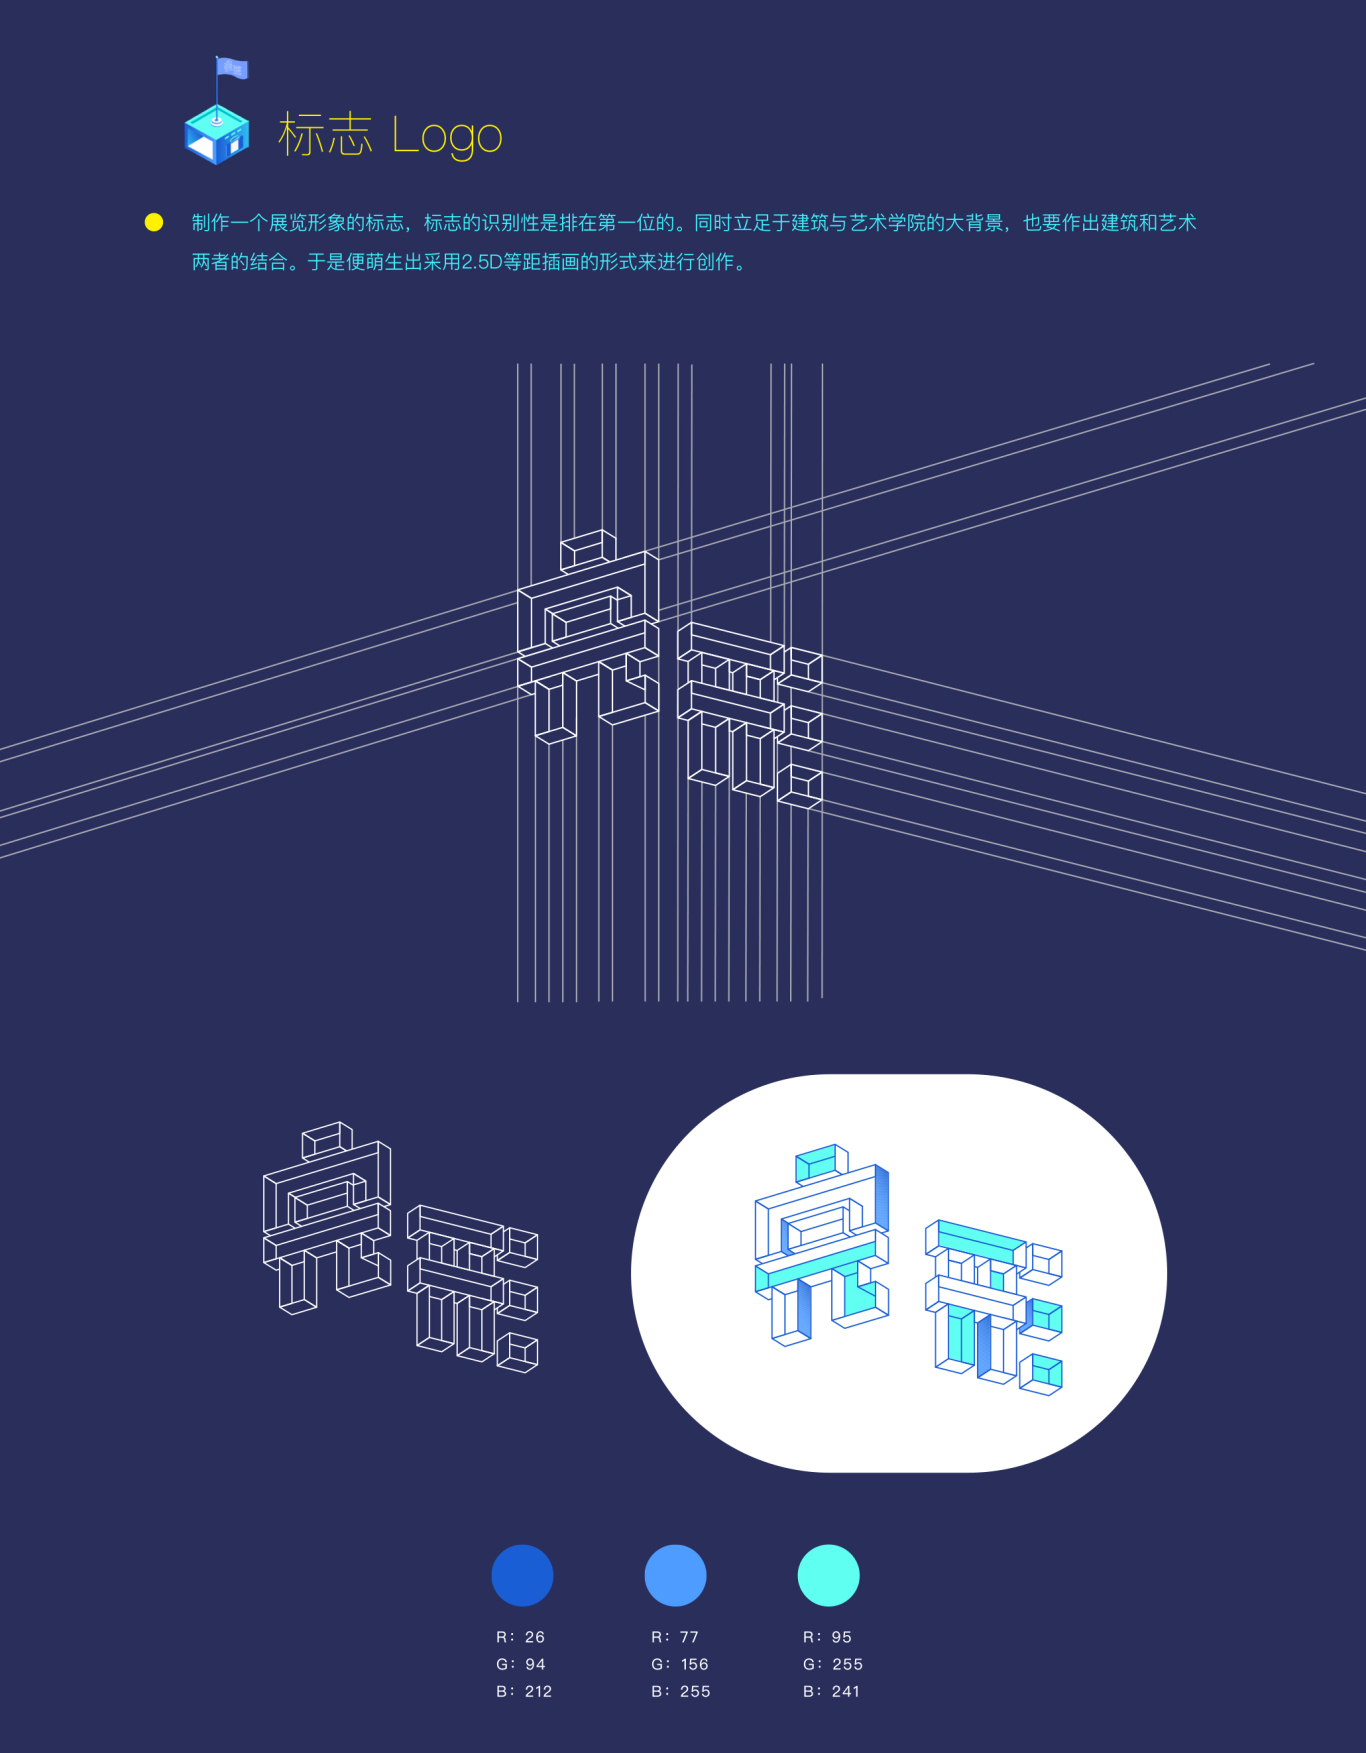 北京交通大学建筑与艺术学院毕业设计展览形象设计图2